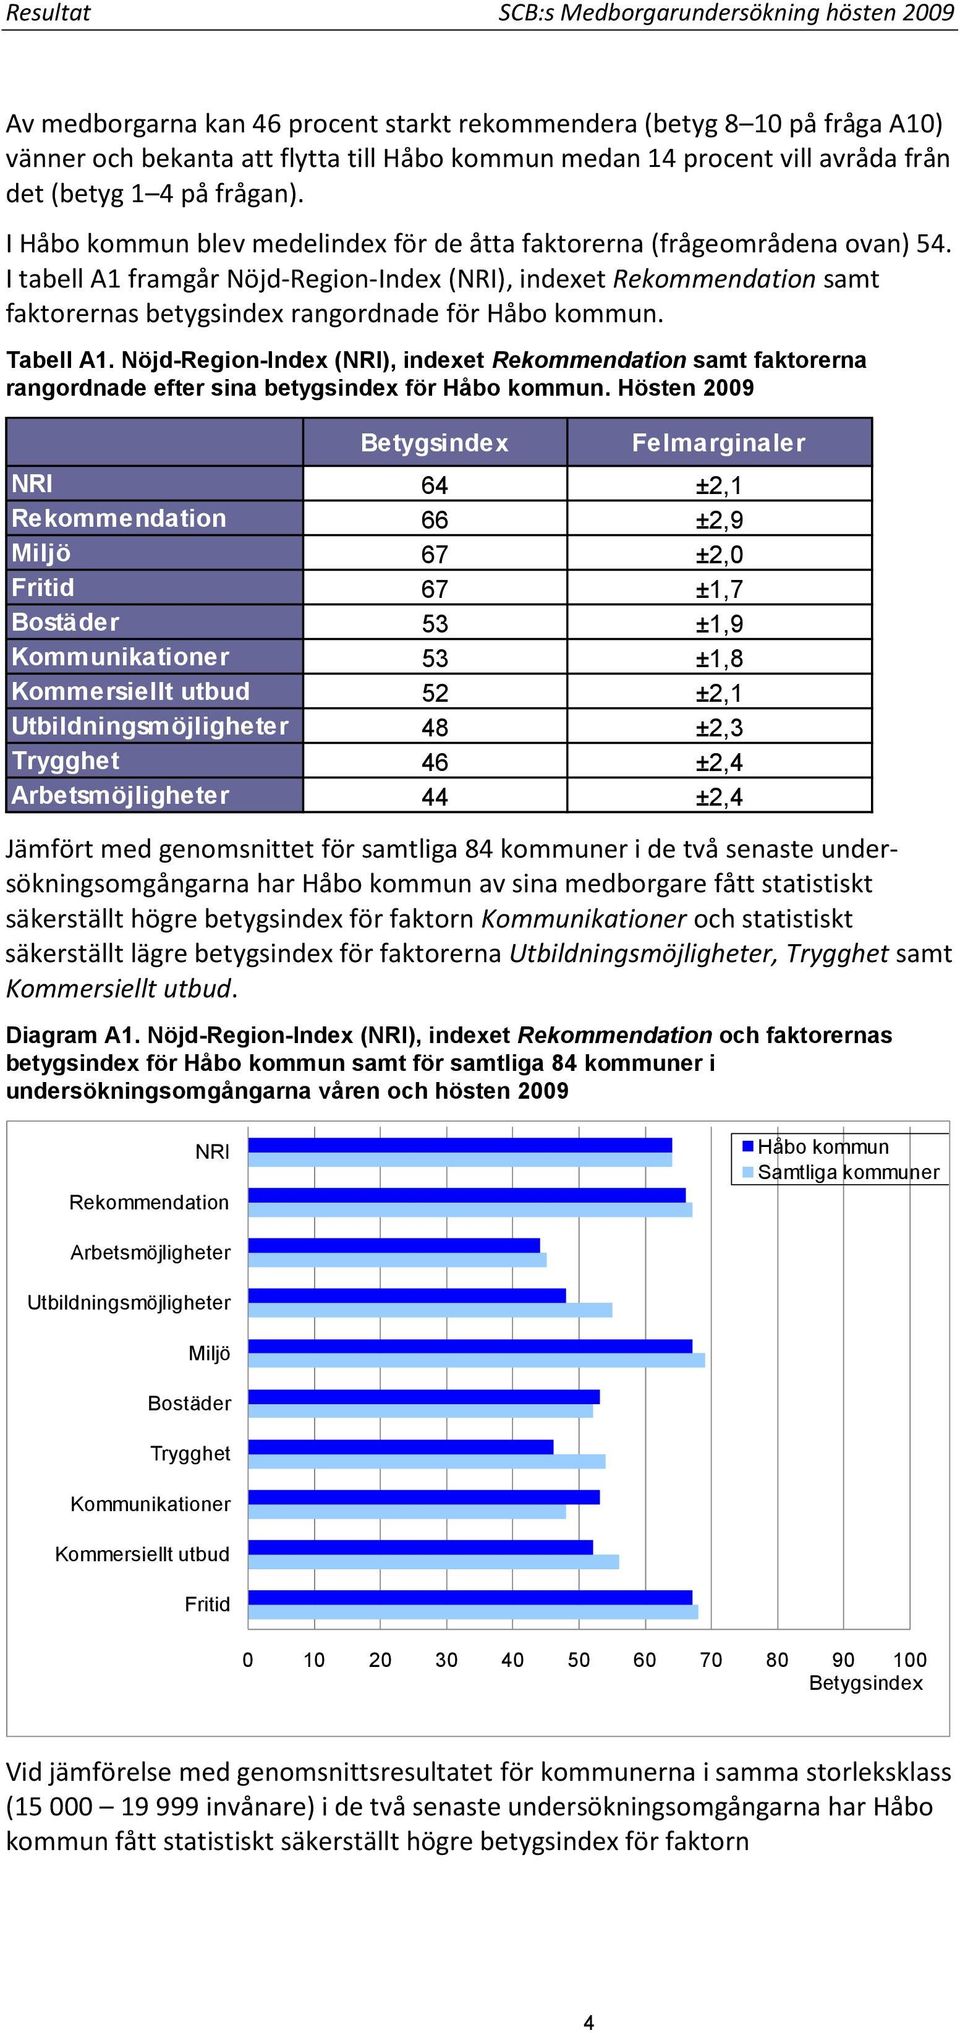 I tabell A1 framgår Nöjd-Region-Index (NRI), indexet Rekommendation samt faktorernas betygsindex rangordnade för Håbo kommun. Tabell A1.